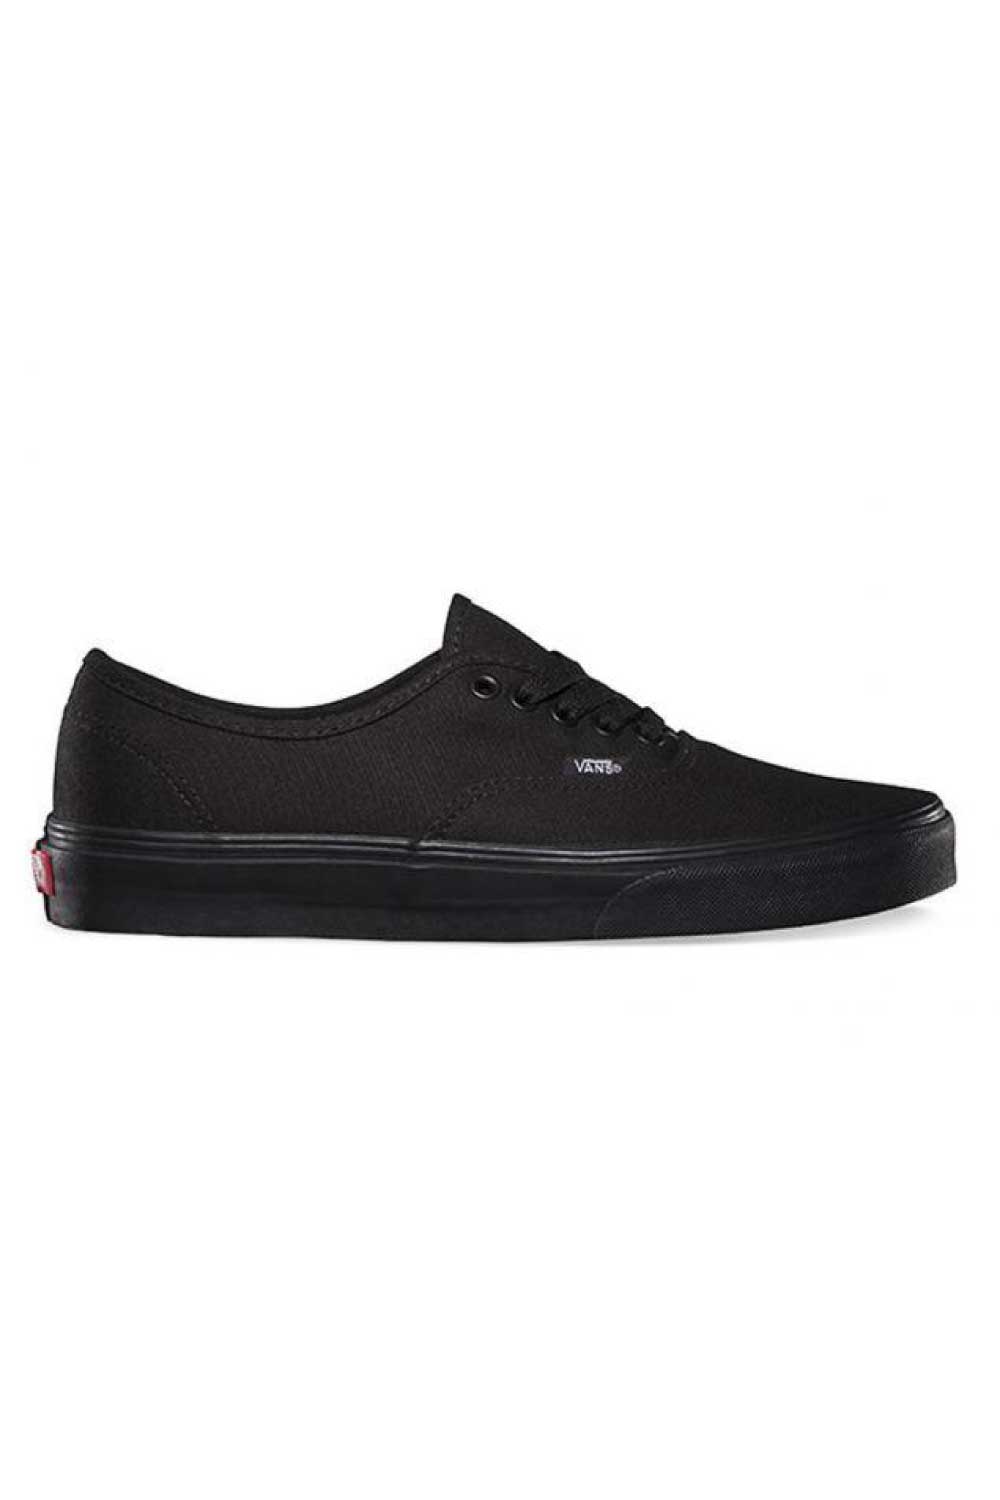 Vans Authentic Black Skate Shoe